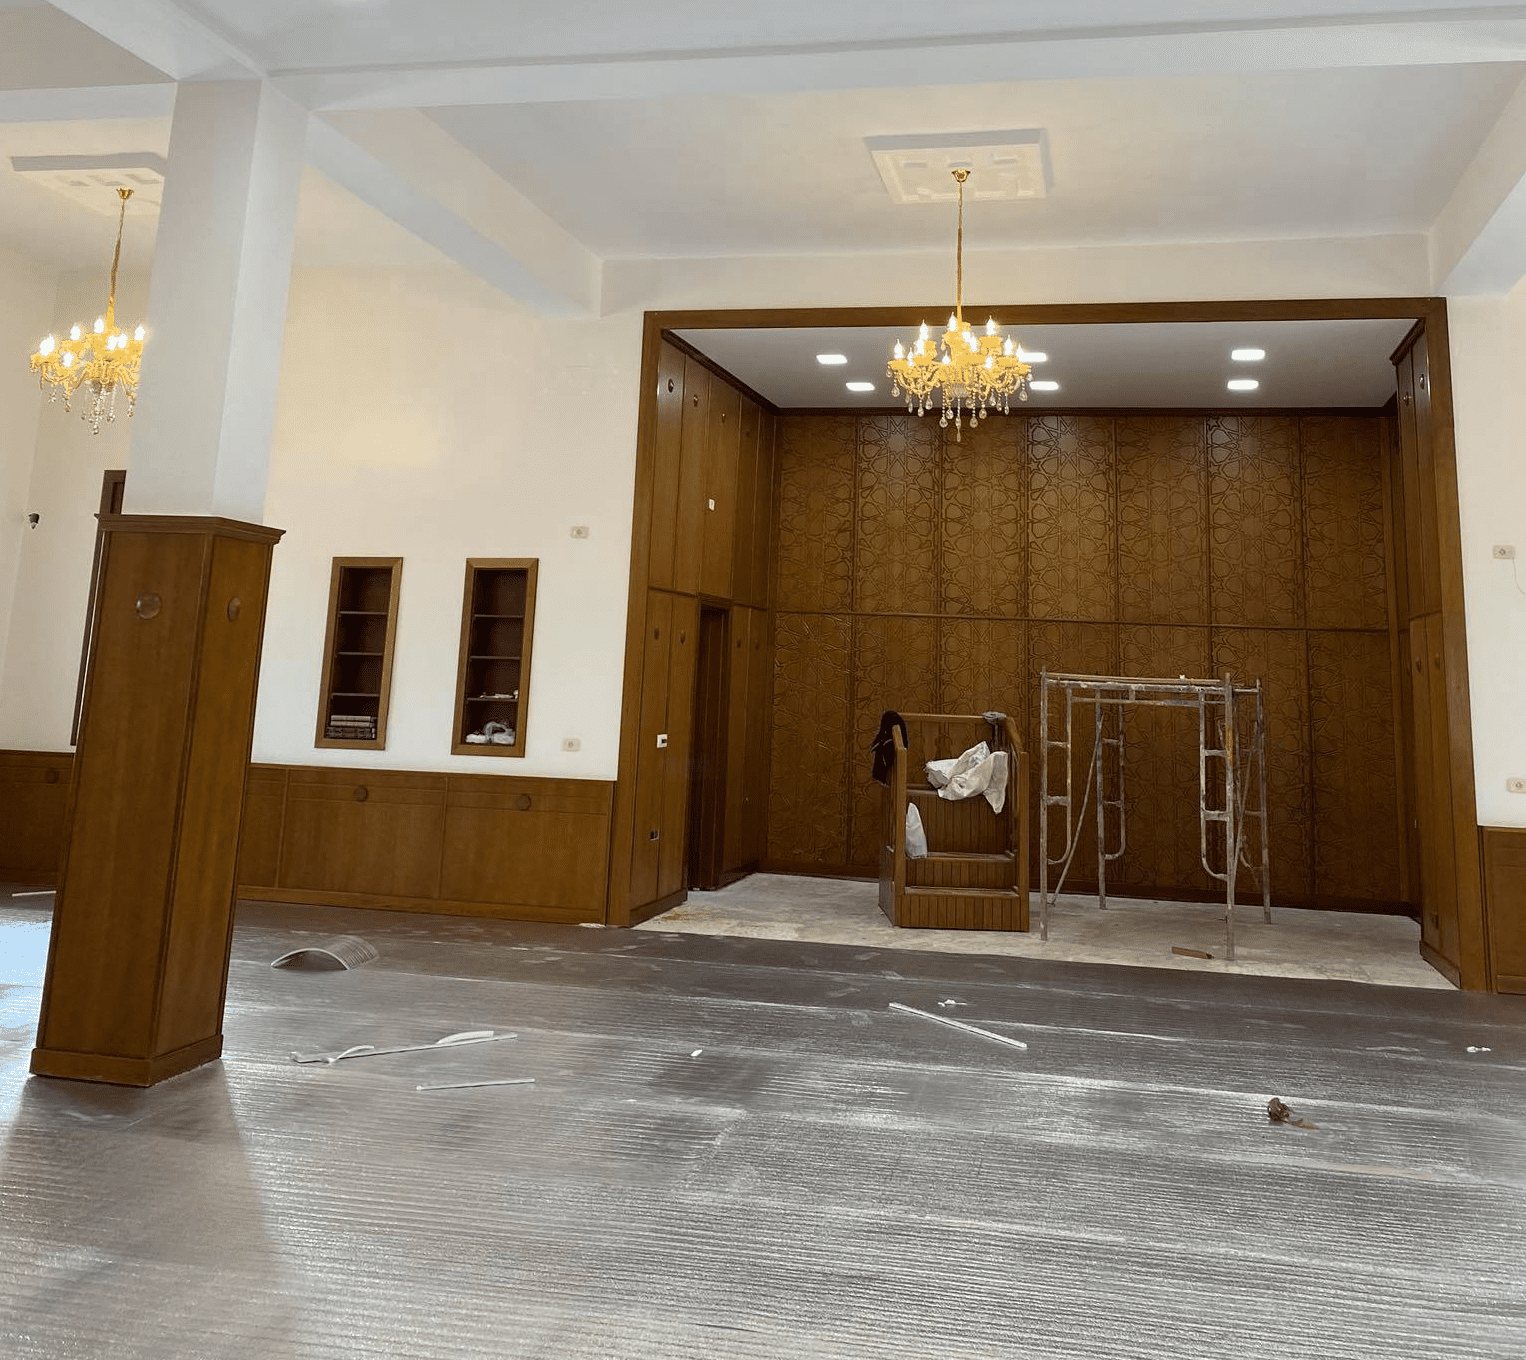 فوم فرش مساجد ٠١٠٢٩٢٩٩٦٢٩ موقع البركة